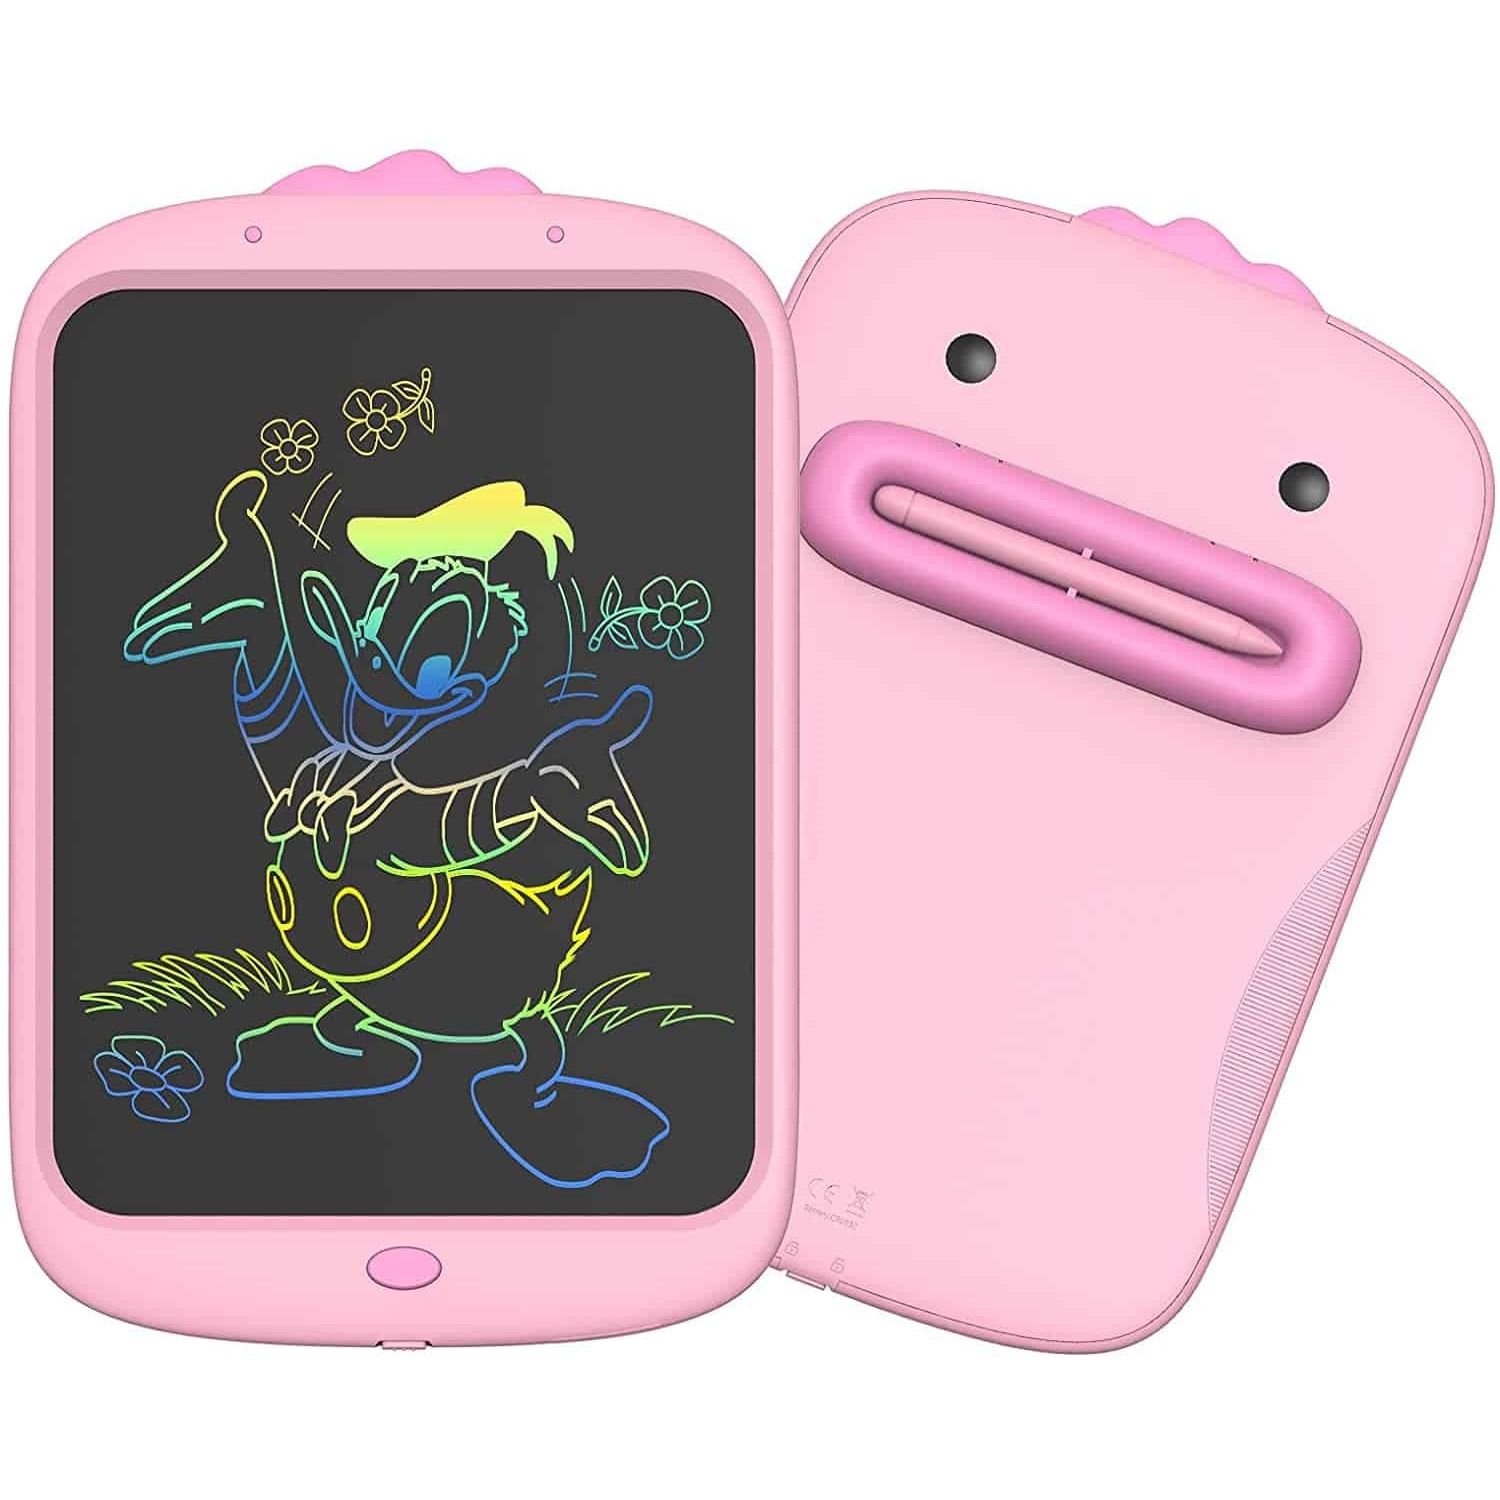 Дитячий LCD планшет для малювання Beiens Каченя 10” Multicolor рожевий (К1001pink) - фото 1